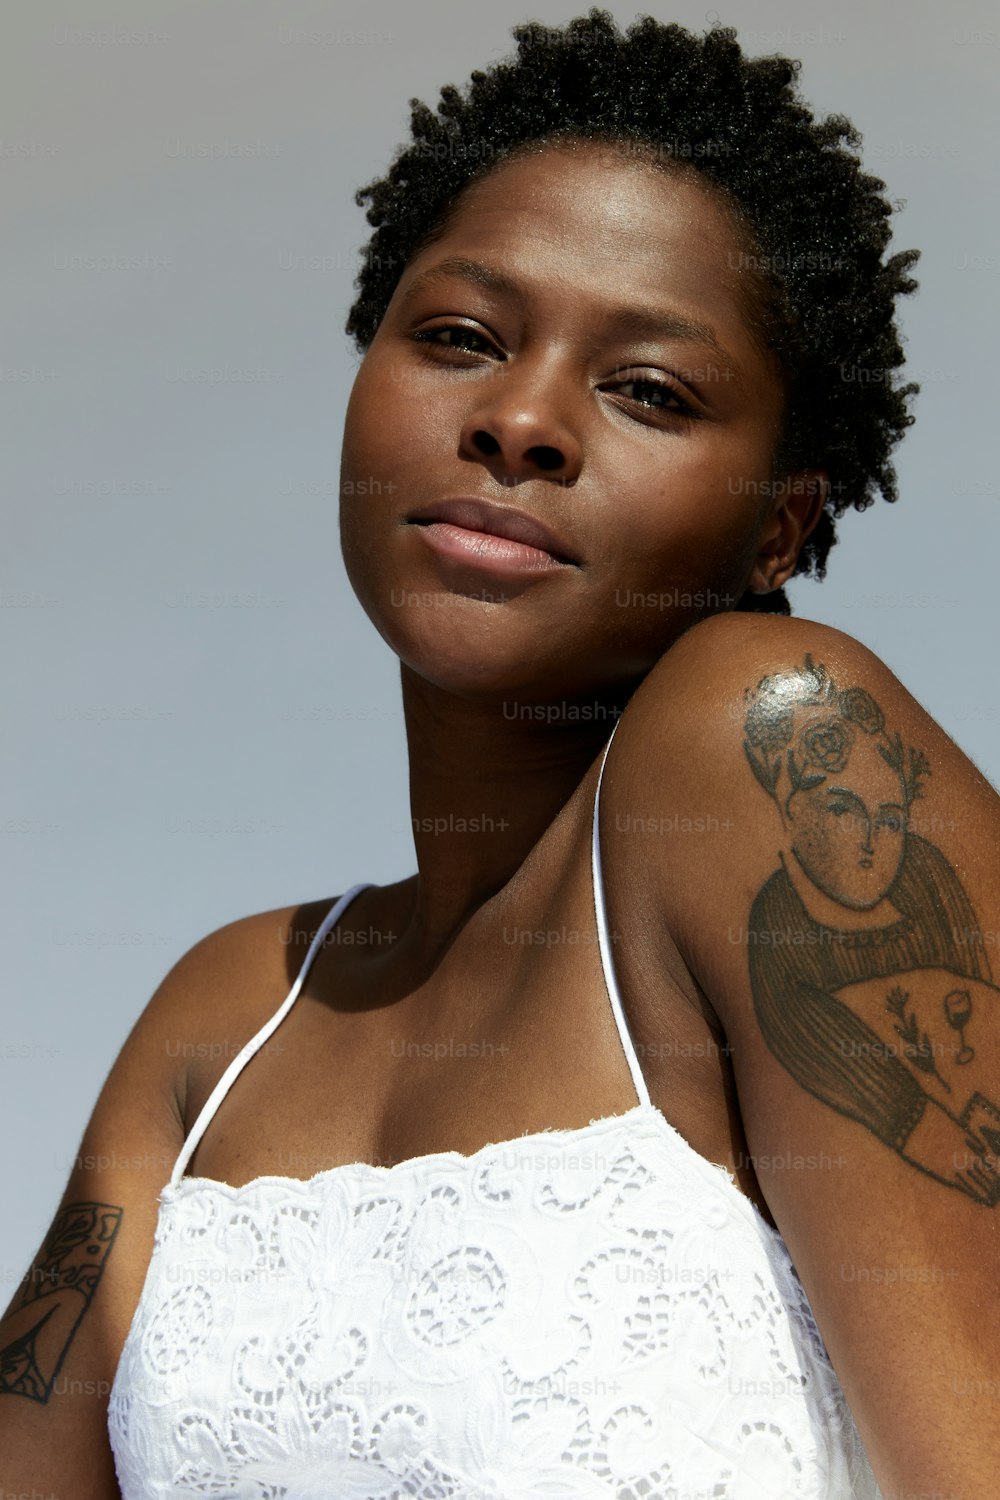 Una donna con un tatuaggio sul suo braccio